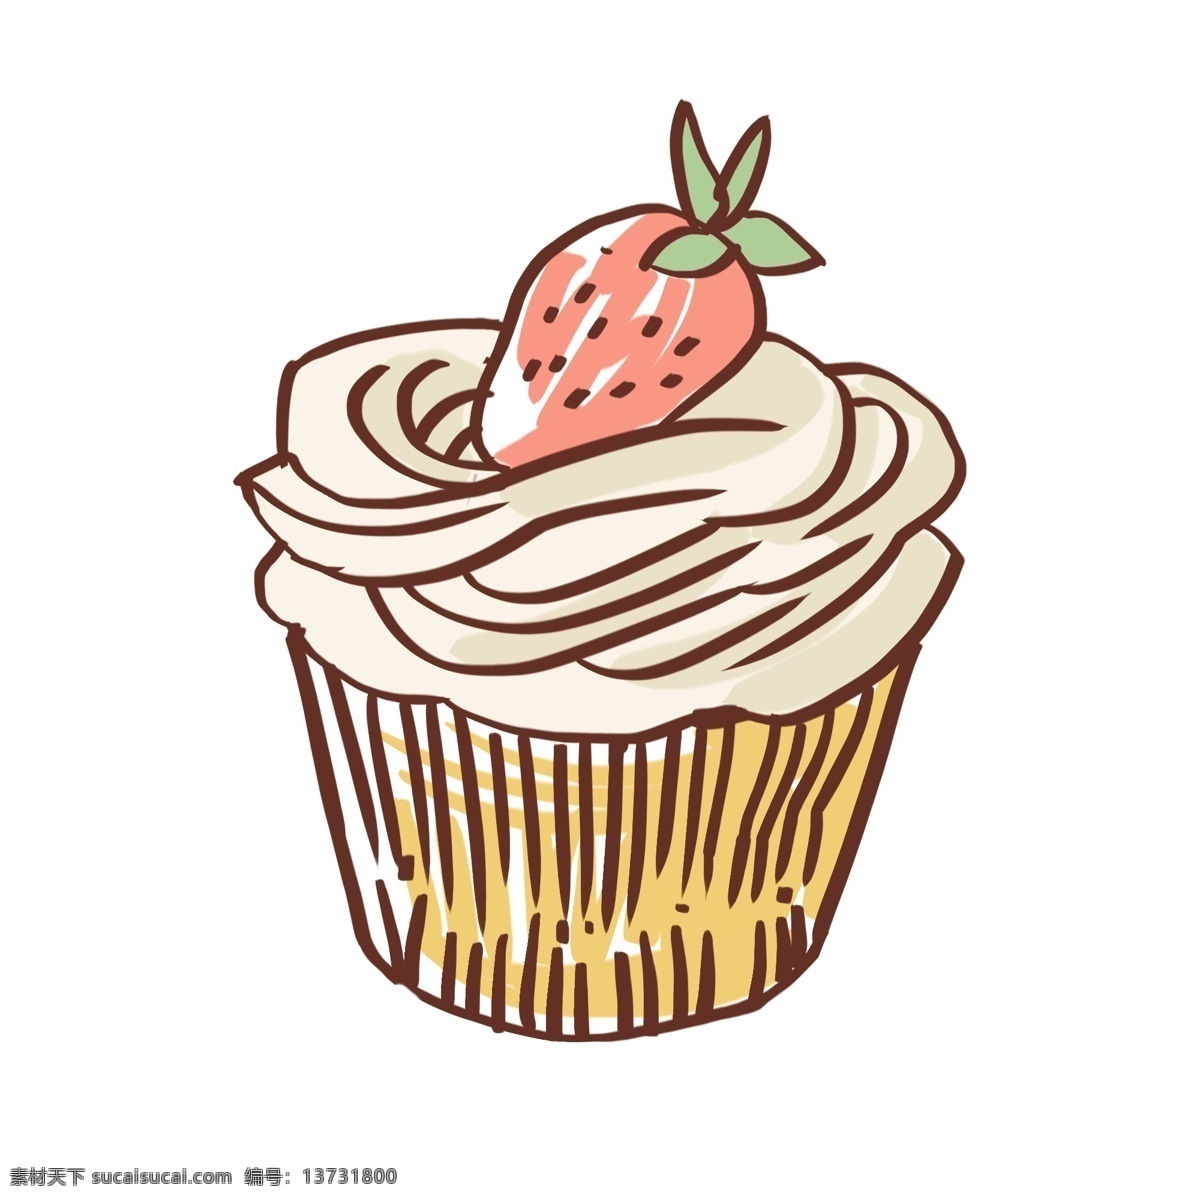 手绘 奶油 纸杯 草莓 水果 蛋糕 甜品 甜品店 美味 好吃的 手绘蛋糕 甜品矢量下载